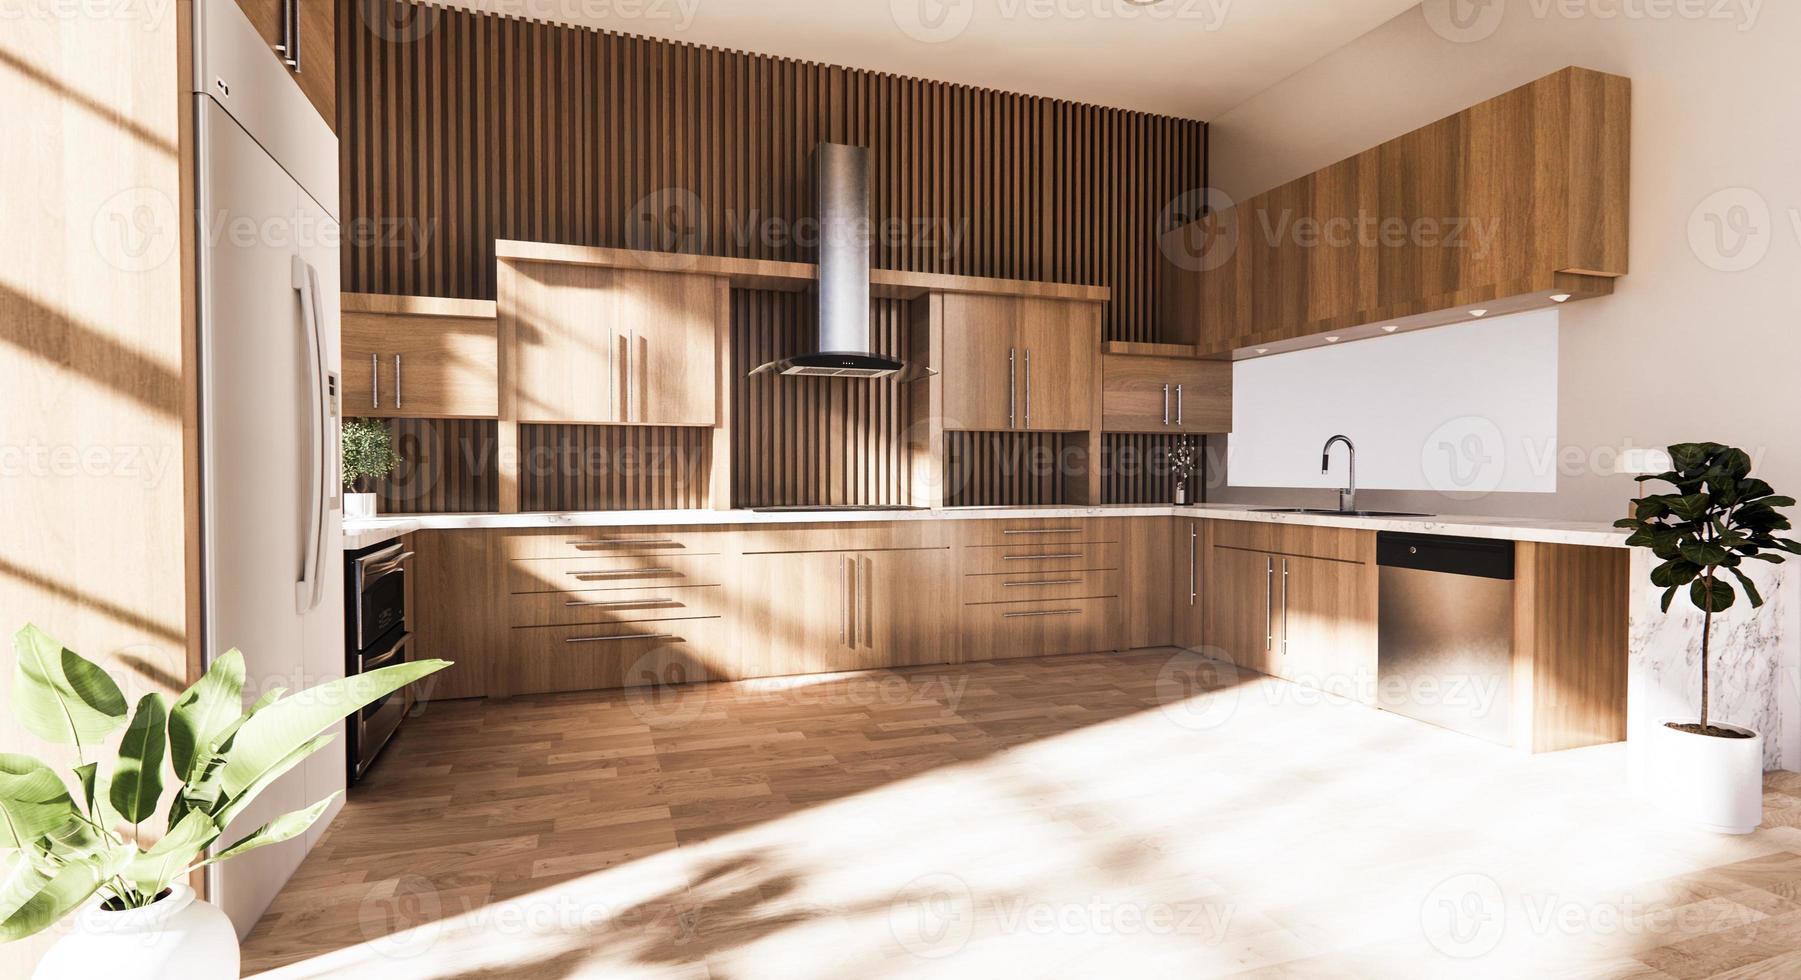 Küche im japanischen Stil. 3D-Rendering foto